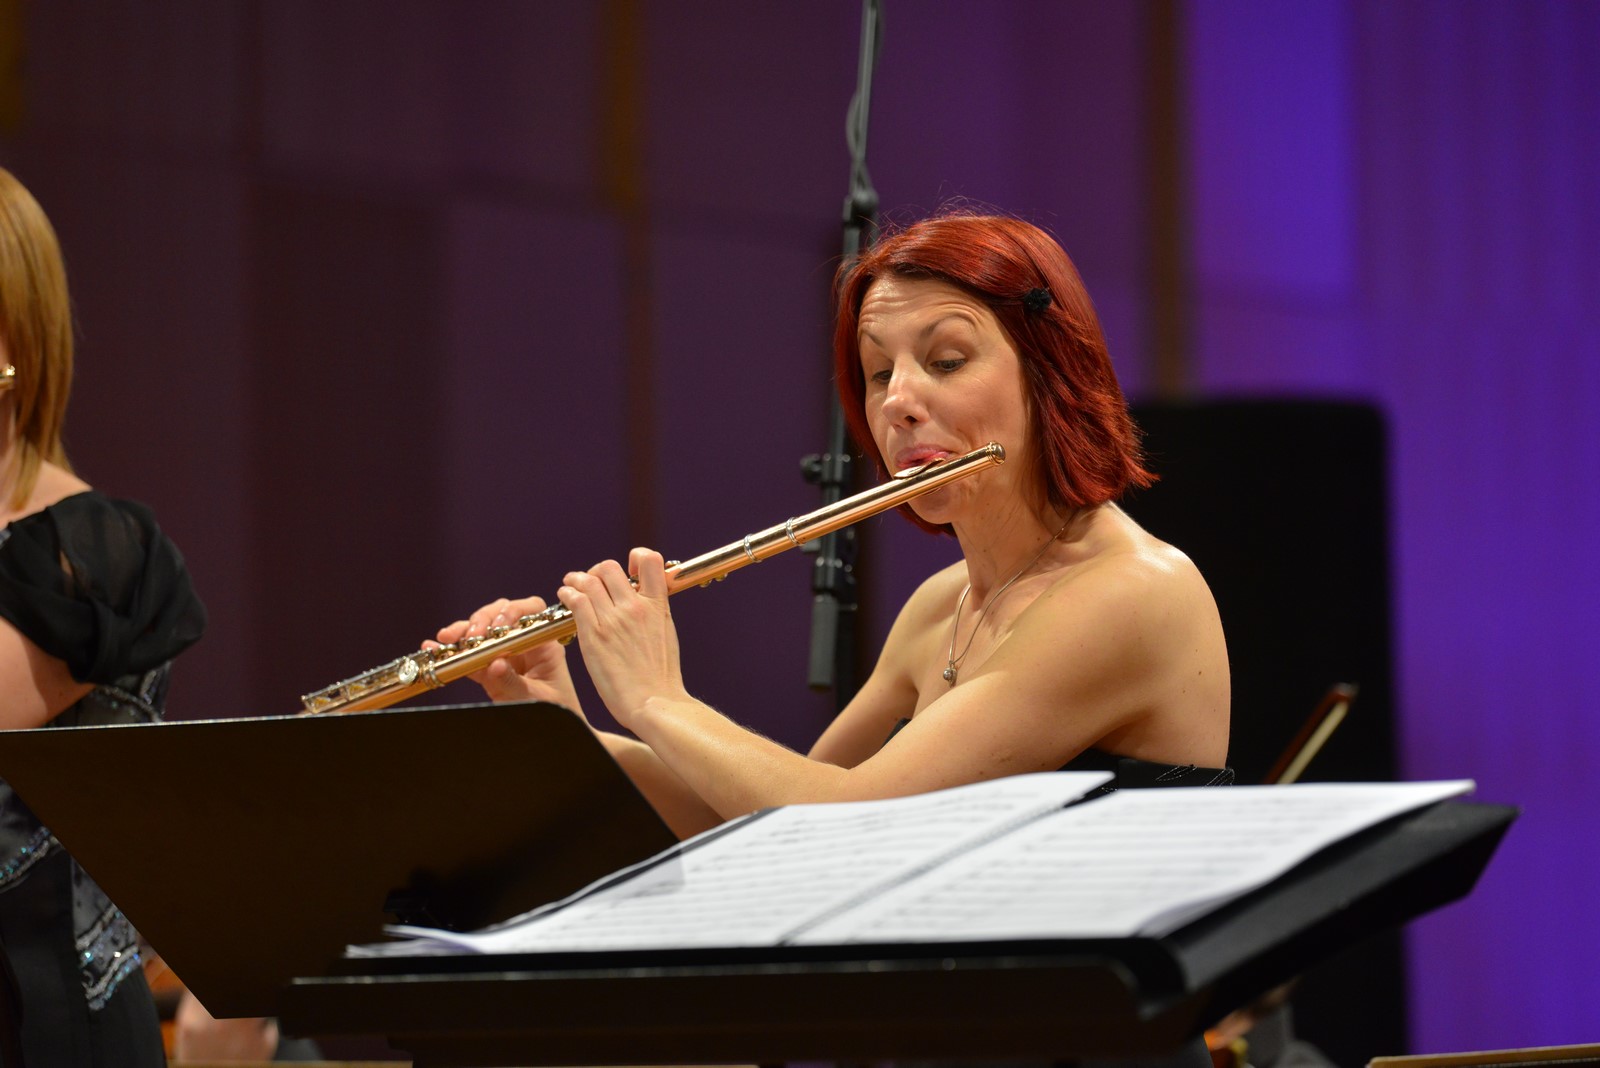 Požega.eu | DANAS ZANIMLJIVO GLAZBENO GOSTOVANJE U POŽEGI: Klavir i flauta u djelima klasične glazbe